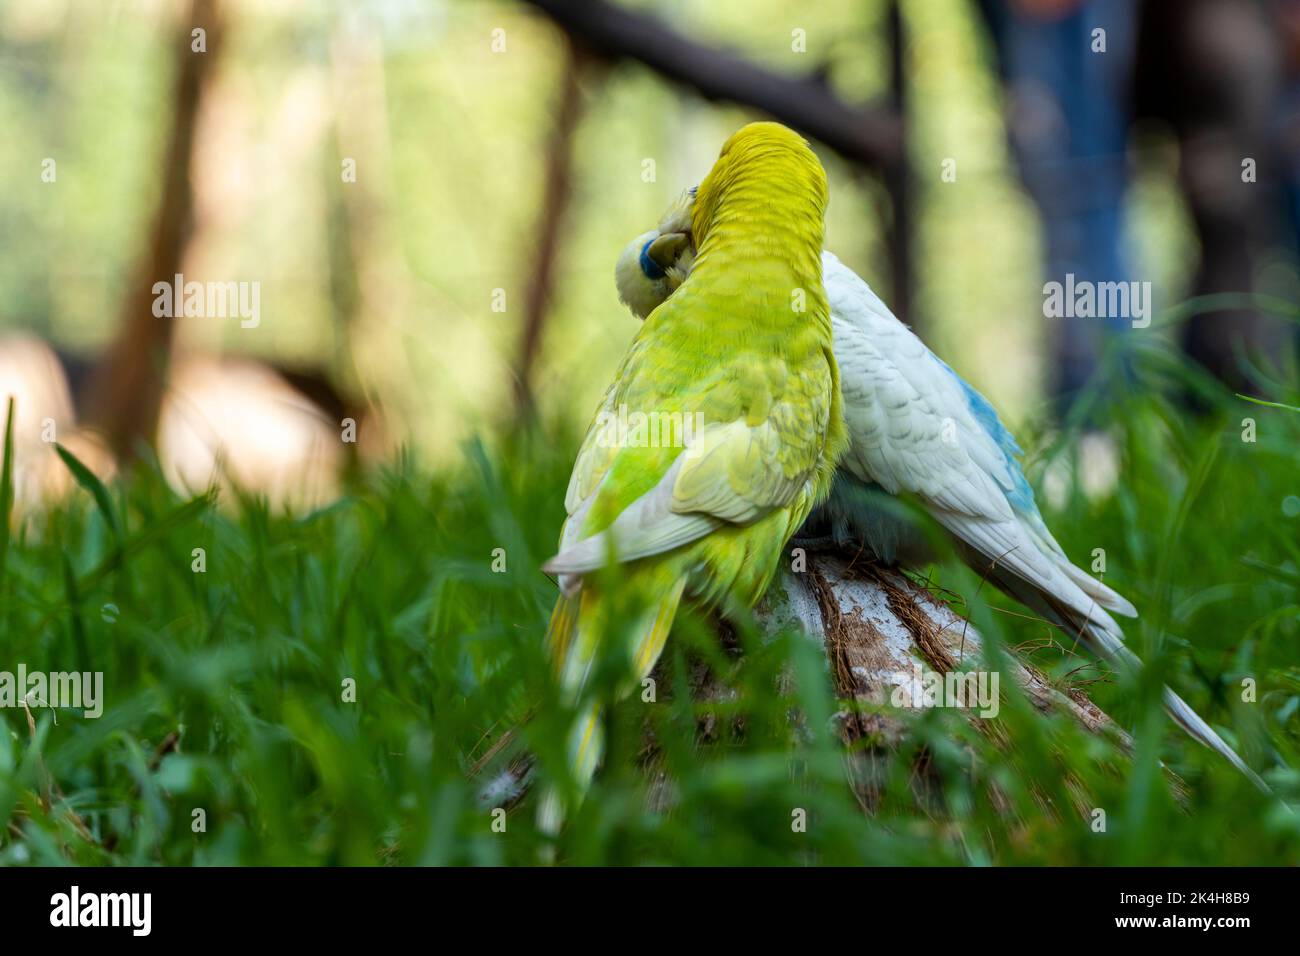 Zwei liebende Vögel, die im Gras spielen, ein gelbgrüner und ein blauweißer, kleiner Sittich, Hintergrund mit Bokeh mexiko Stockfoto